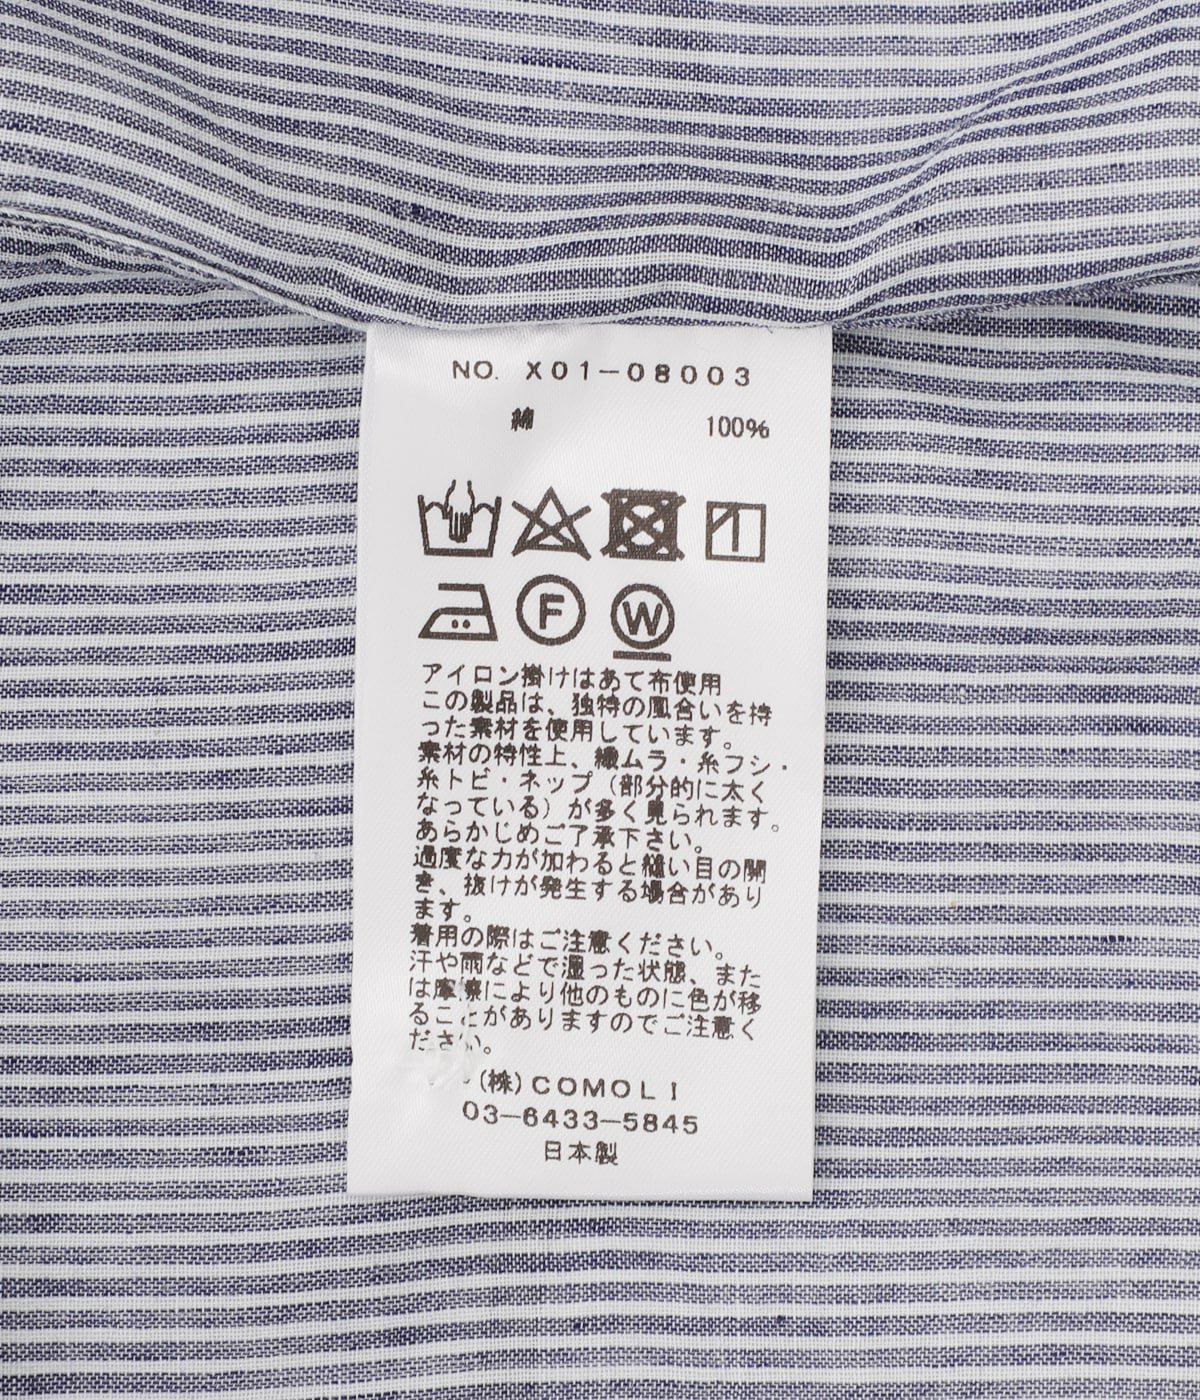 KHADIコットン パジャマ | COMOLI(コモリ) / ファッション雑貨 ナイト